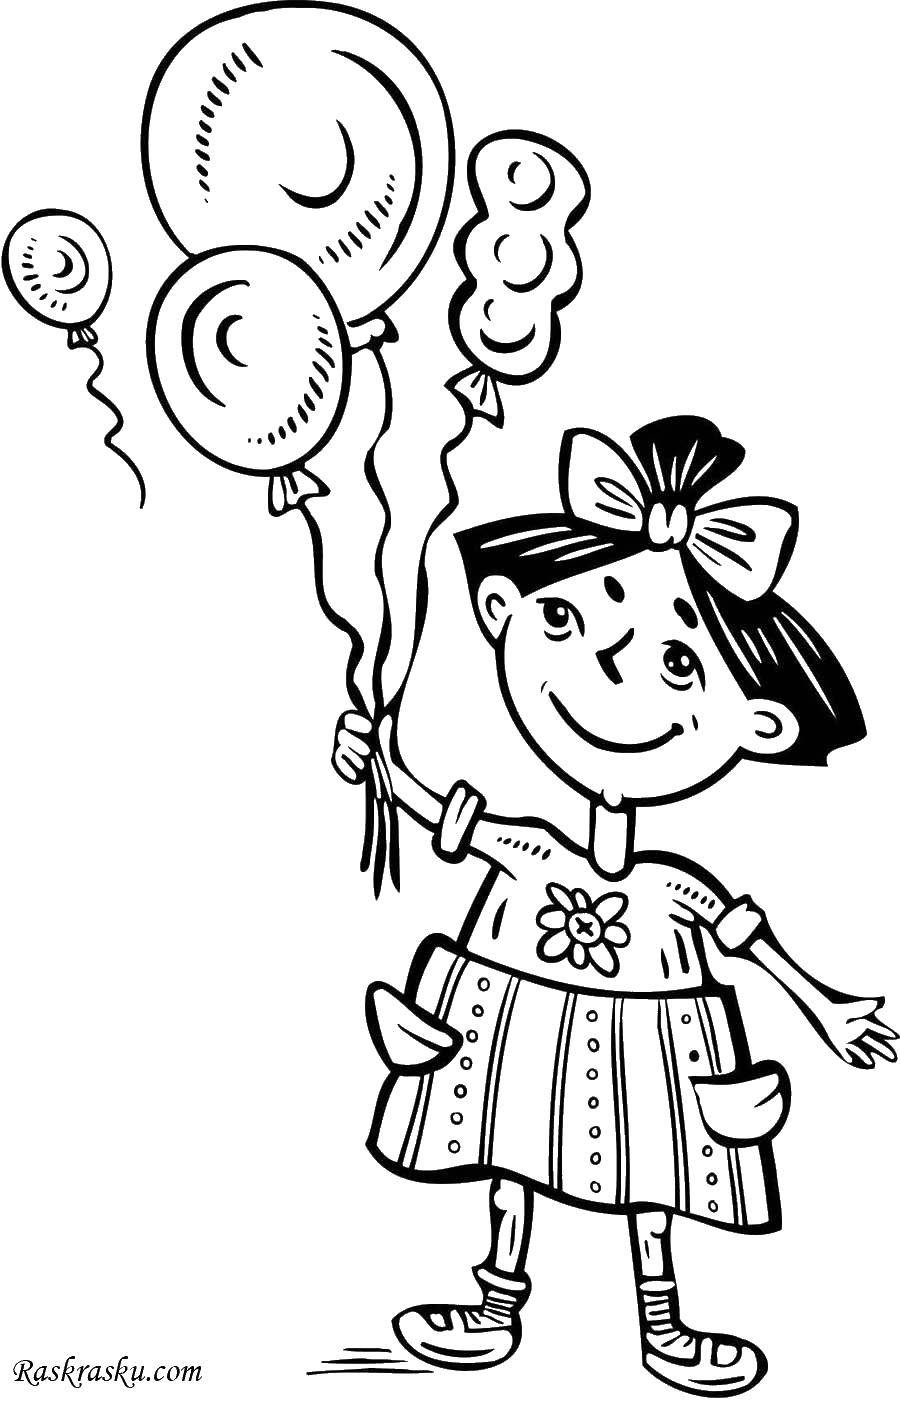 Название: Раскраска Девочка с шарами. Категория: Девочка. Теги: девочка, шары, дети.